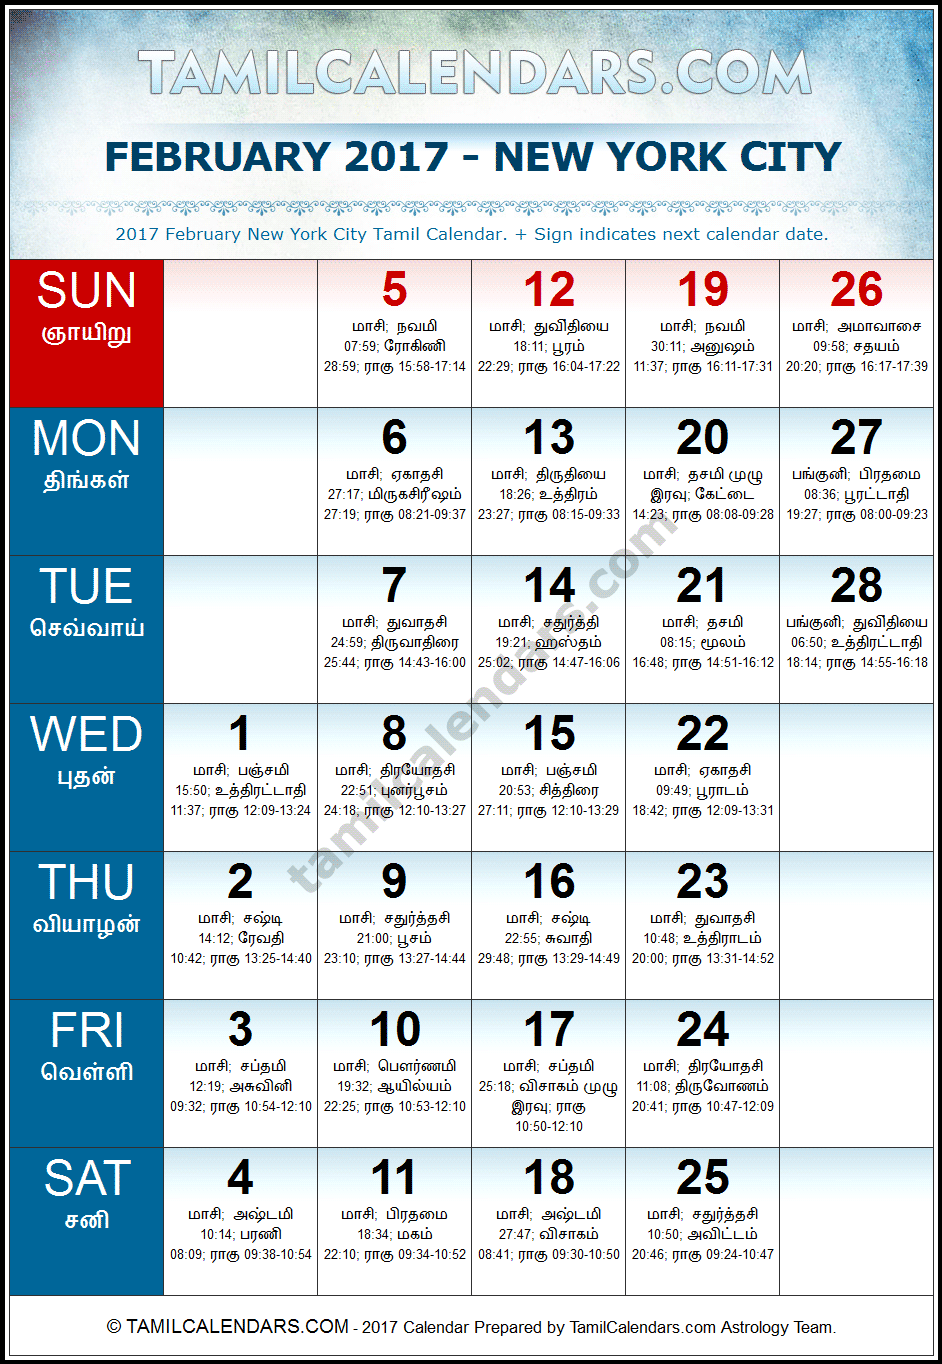 February 2017 Tamil Calendar for New York, USA